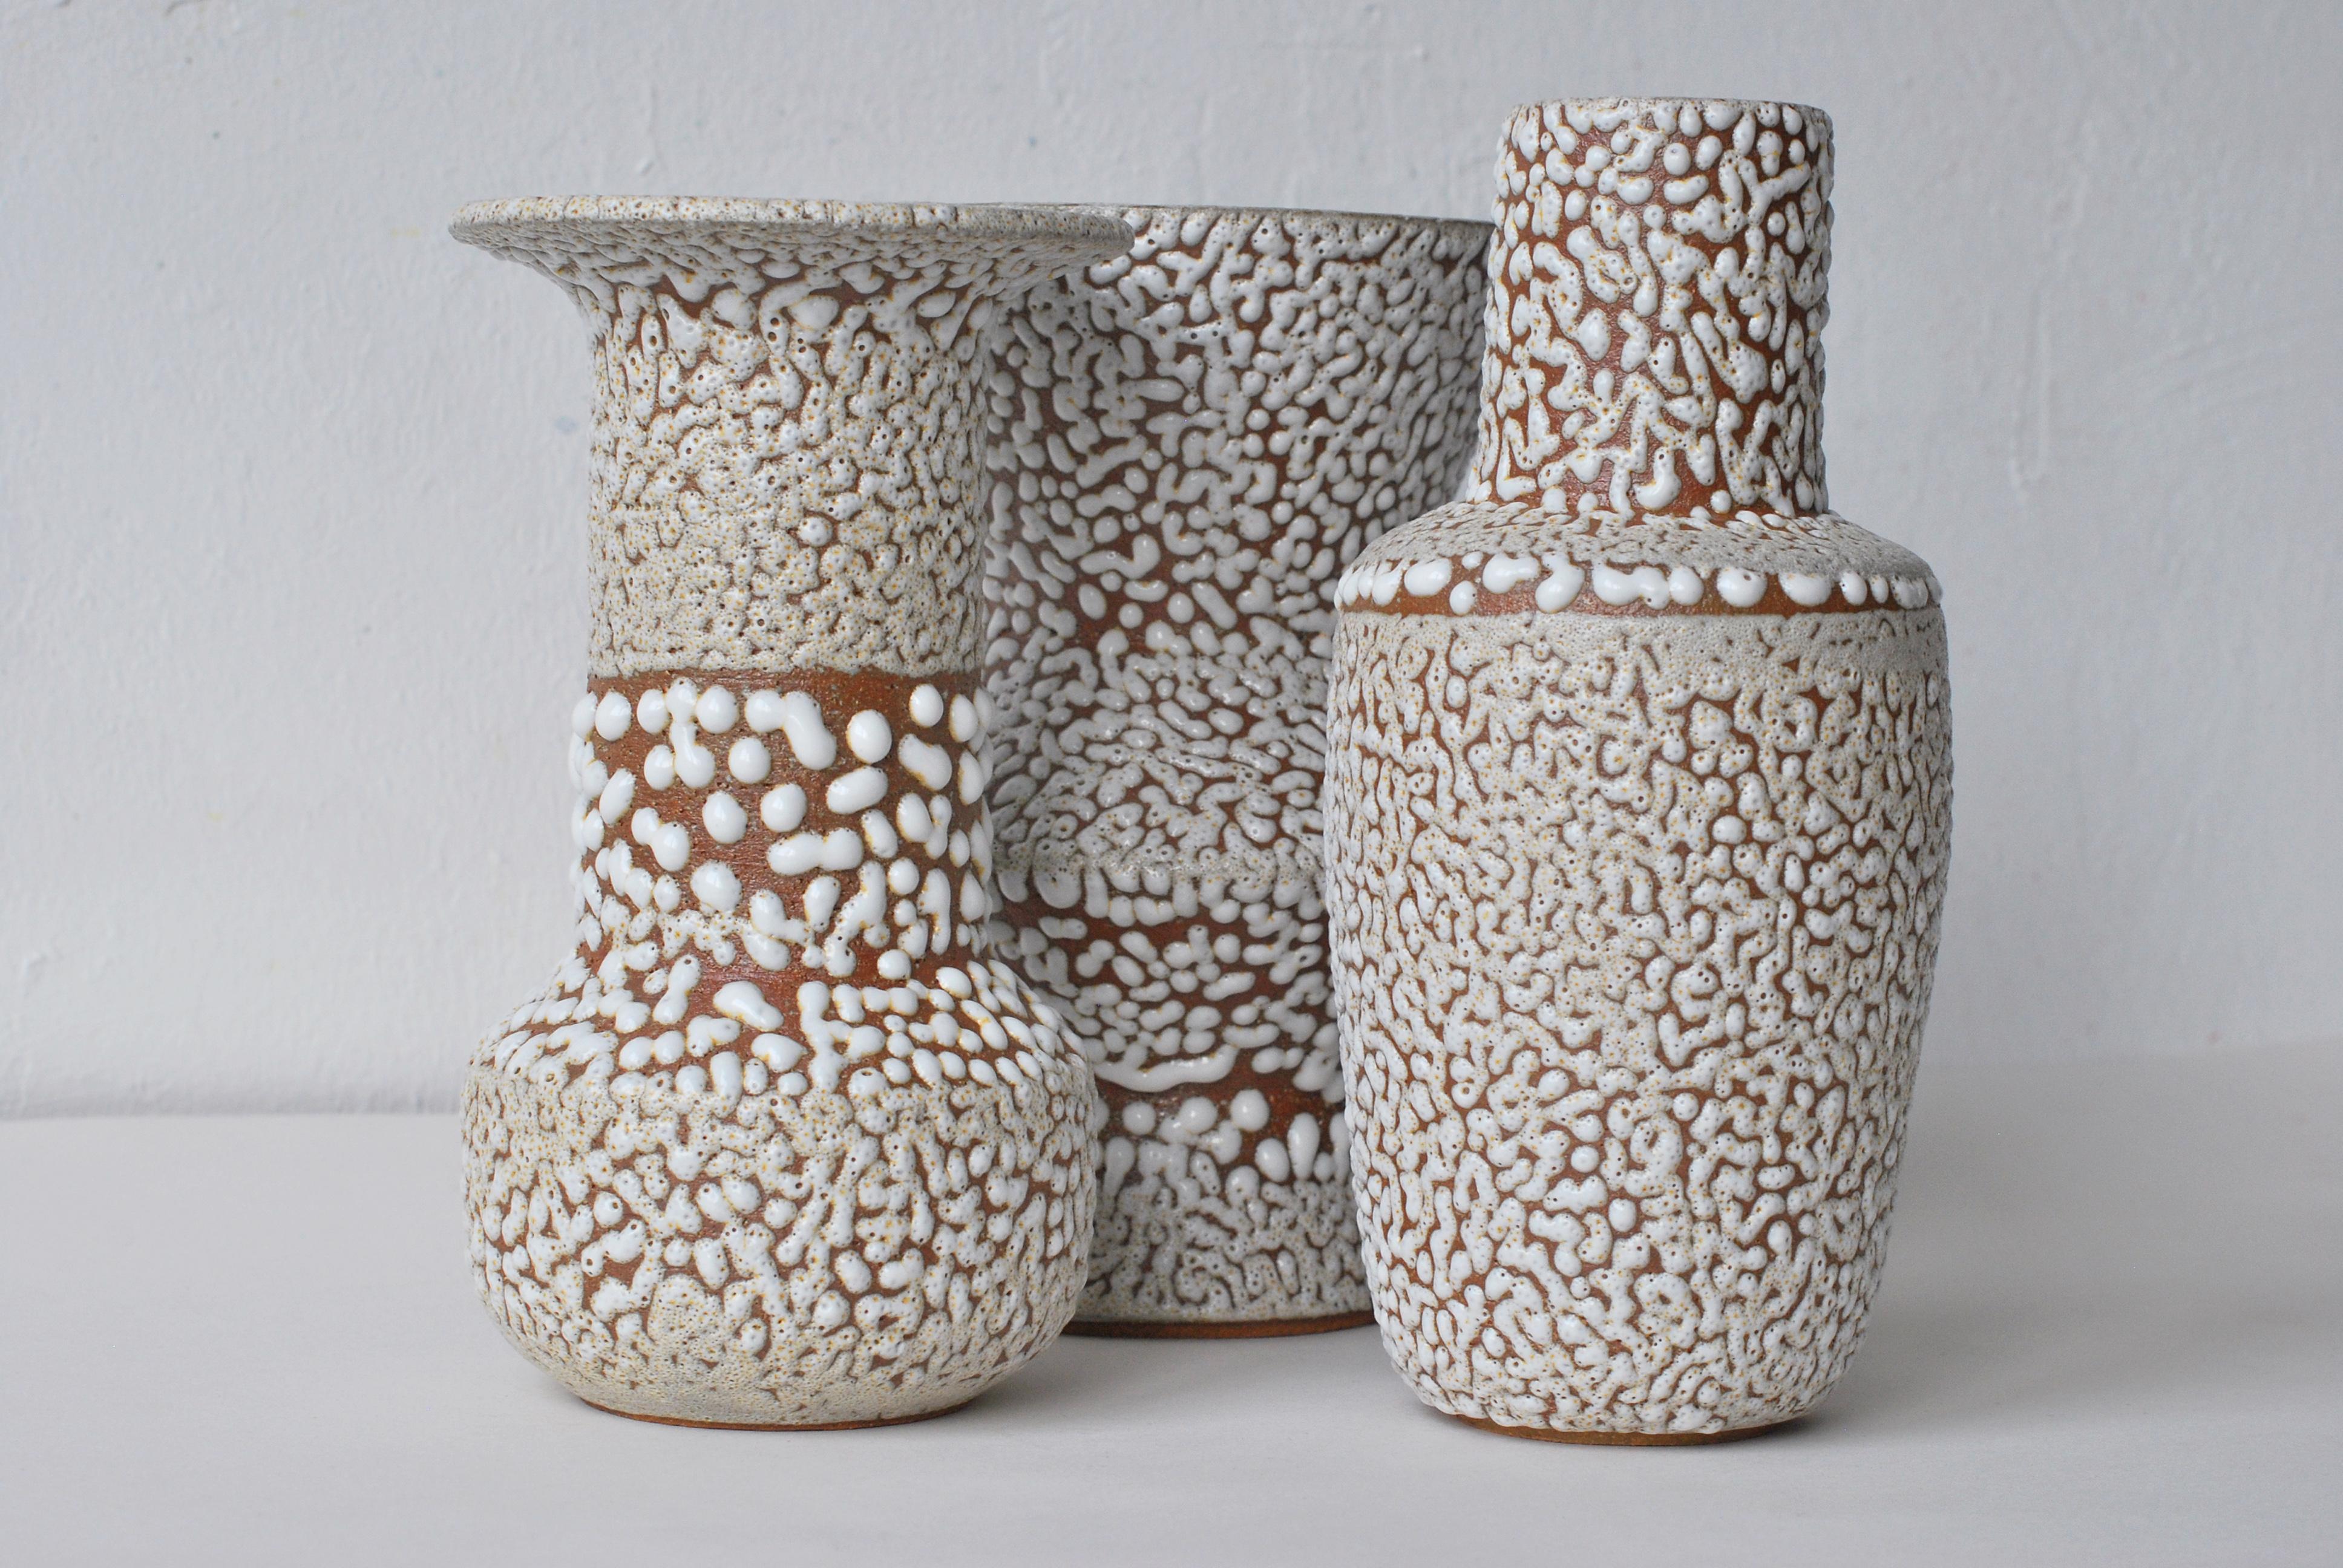 White Stoneware Vase by Moïo Studio 2